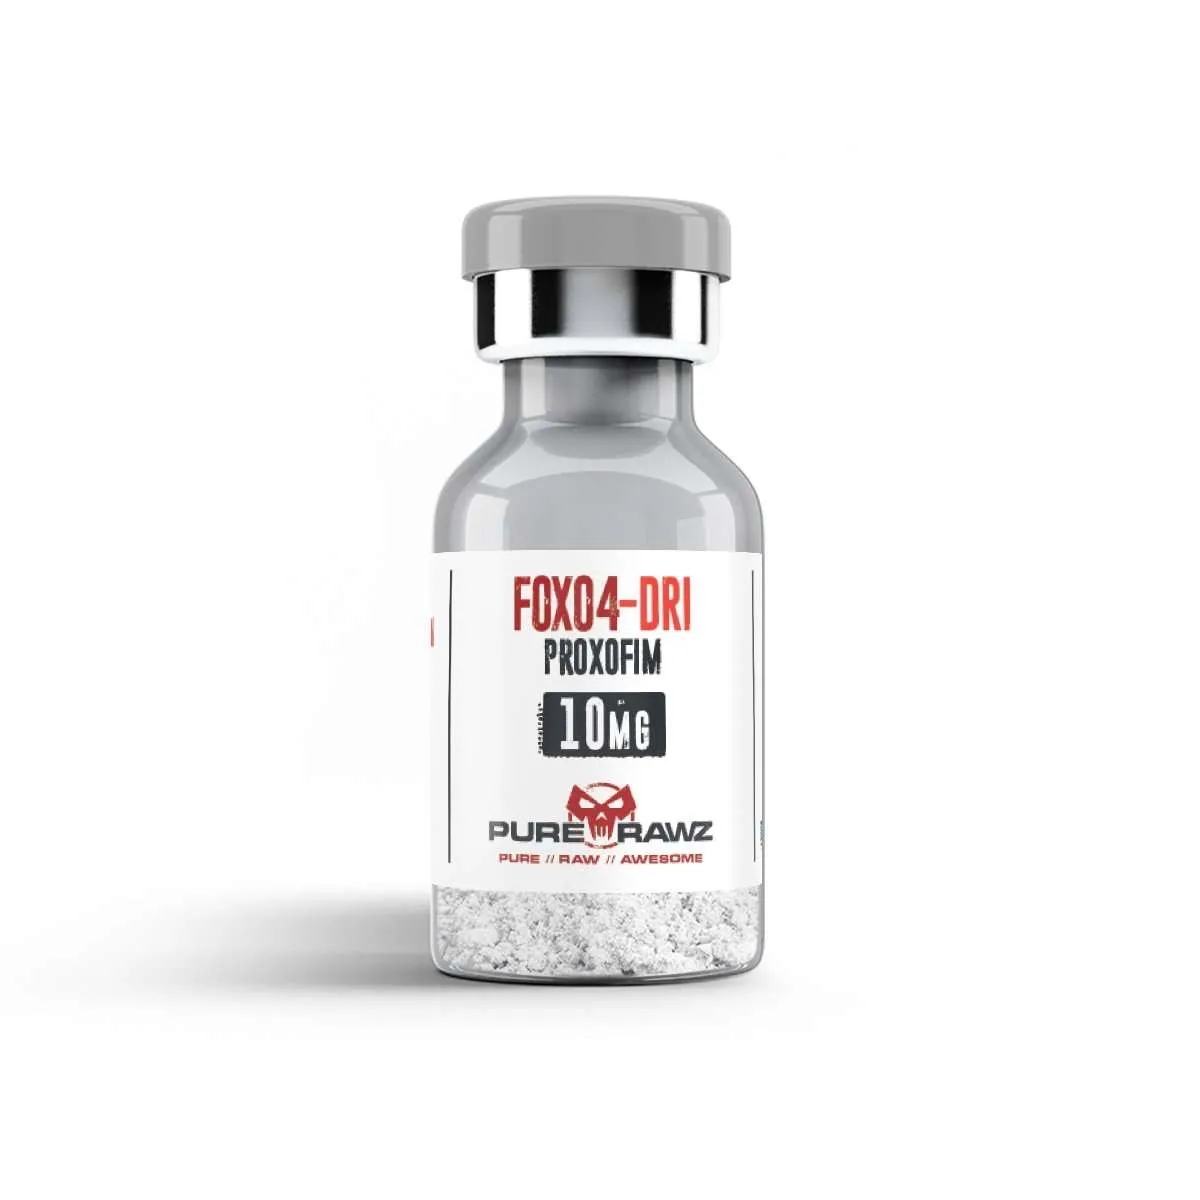 FOXO4-DRI (Proxofim) Peptide